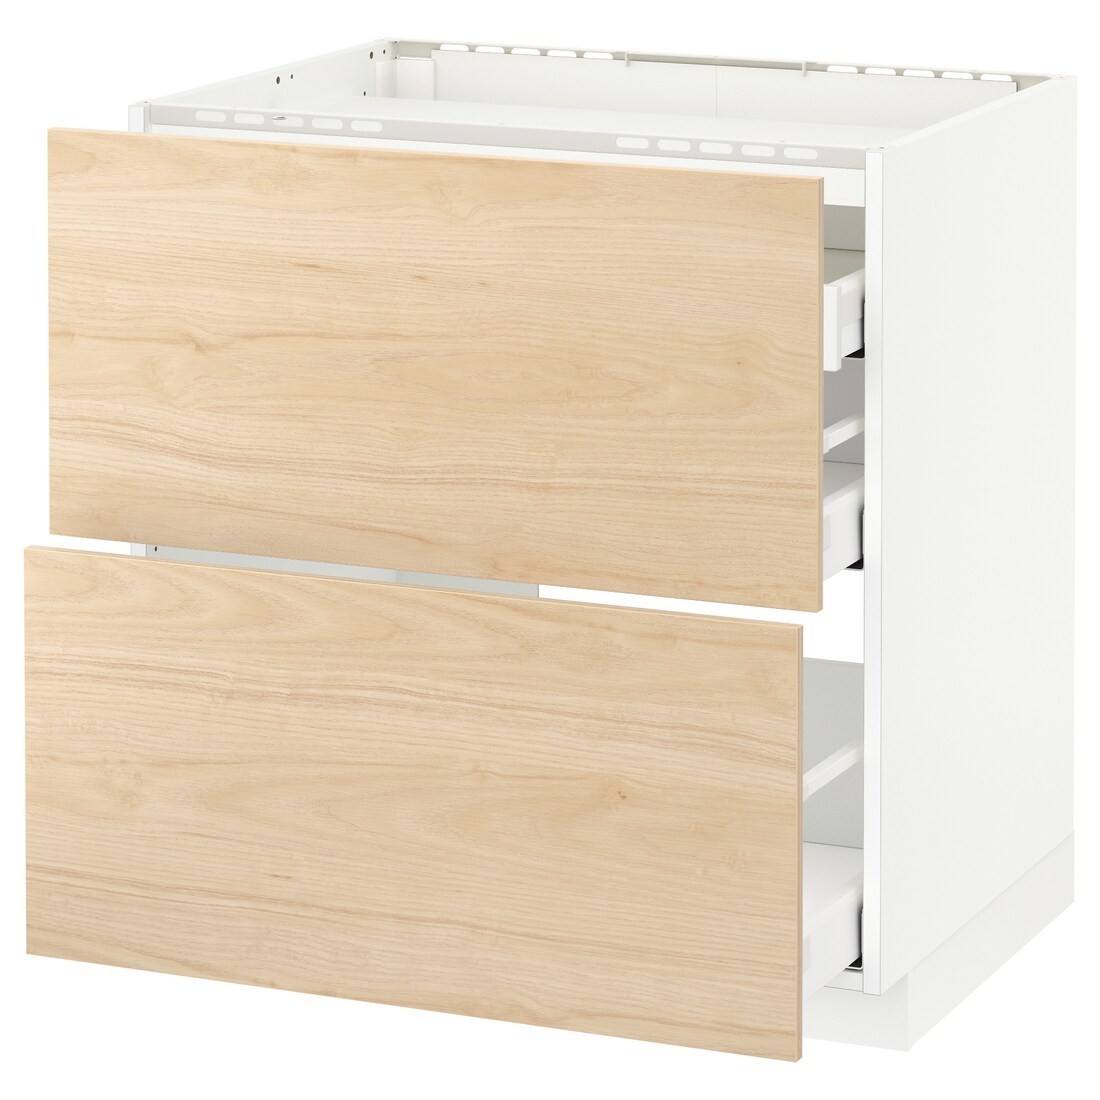 IKEA METOD МЕТОД / MAXIMERA МАКСИМЕРА Напольный шкаф с ящиками, белый / Askersund узор светлый ясень, 80x60 см 39215919 392.159.19